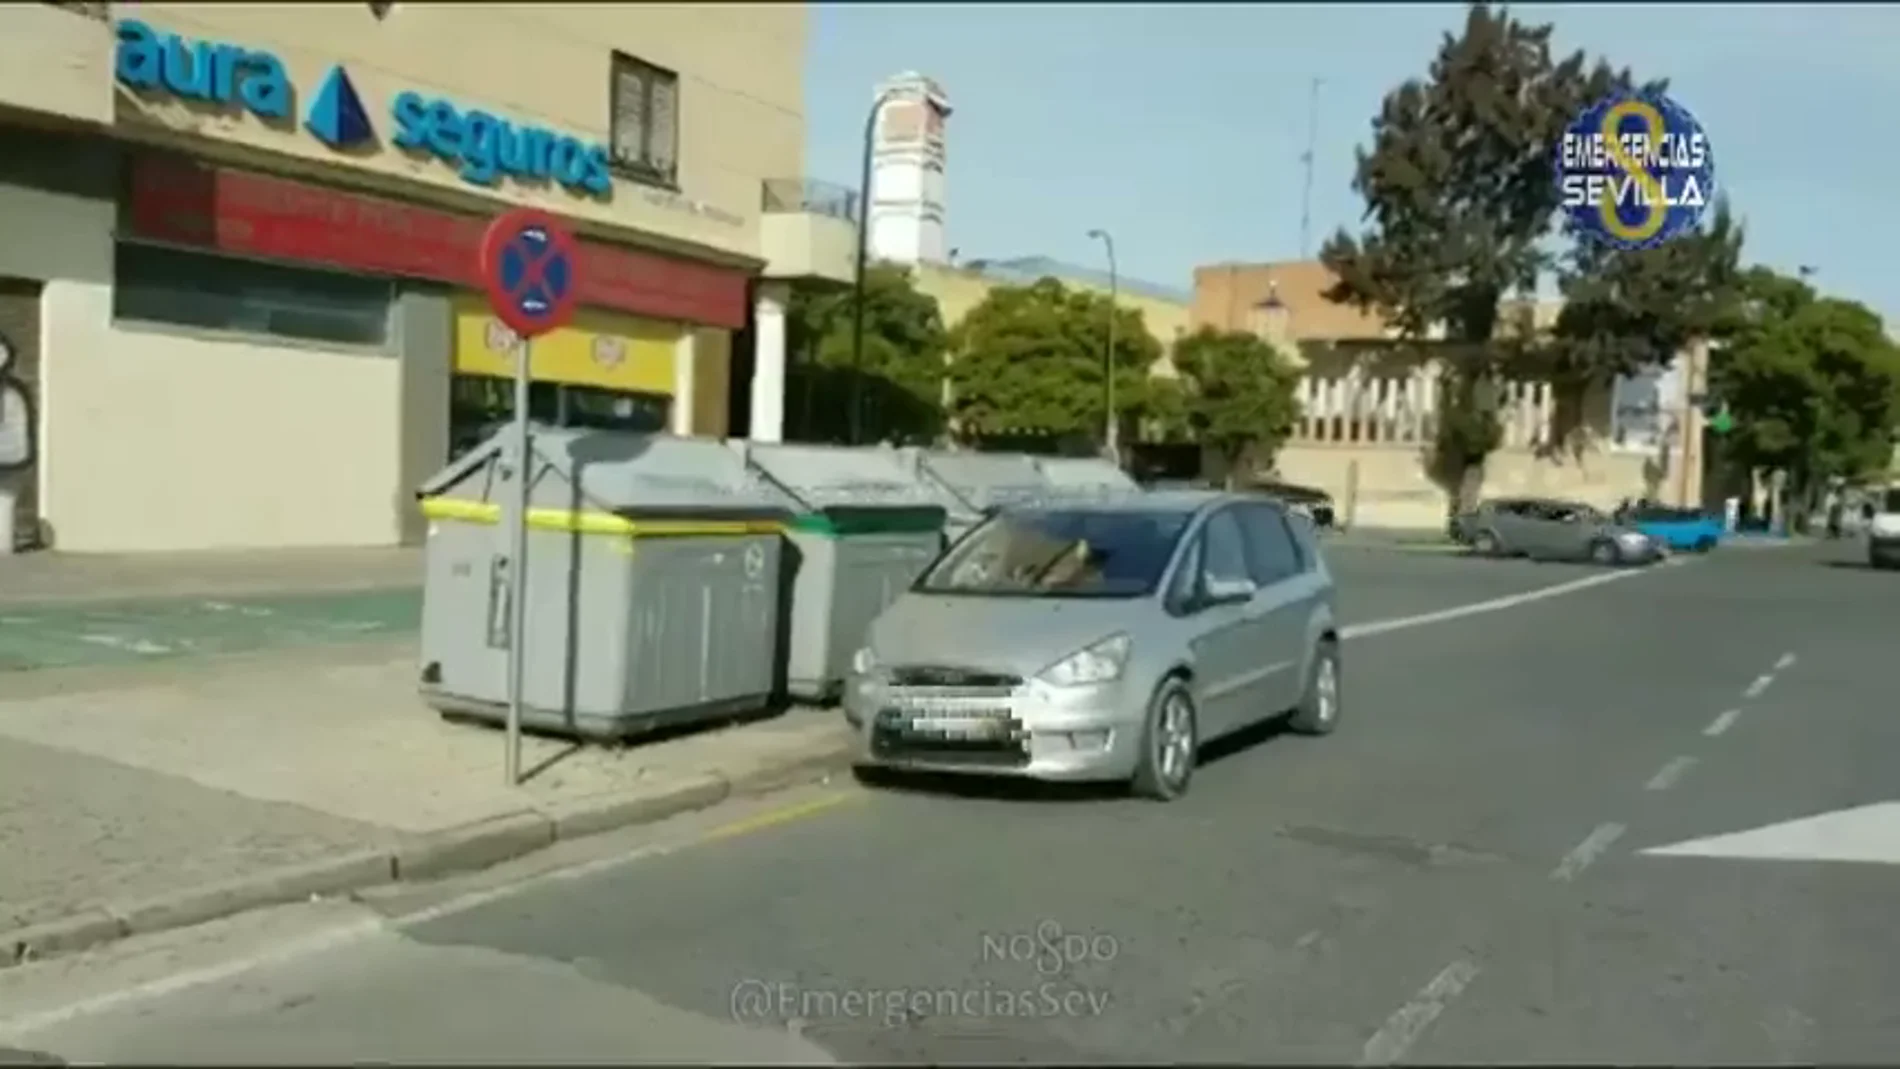 Imagen de un coche mal estacionado en Sevilla